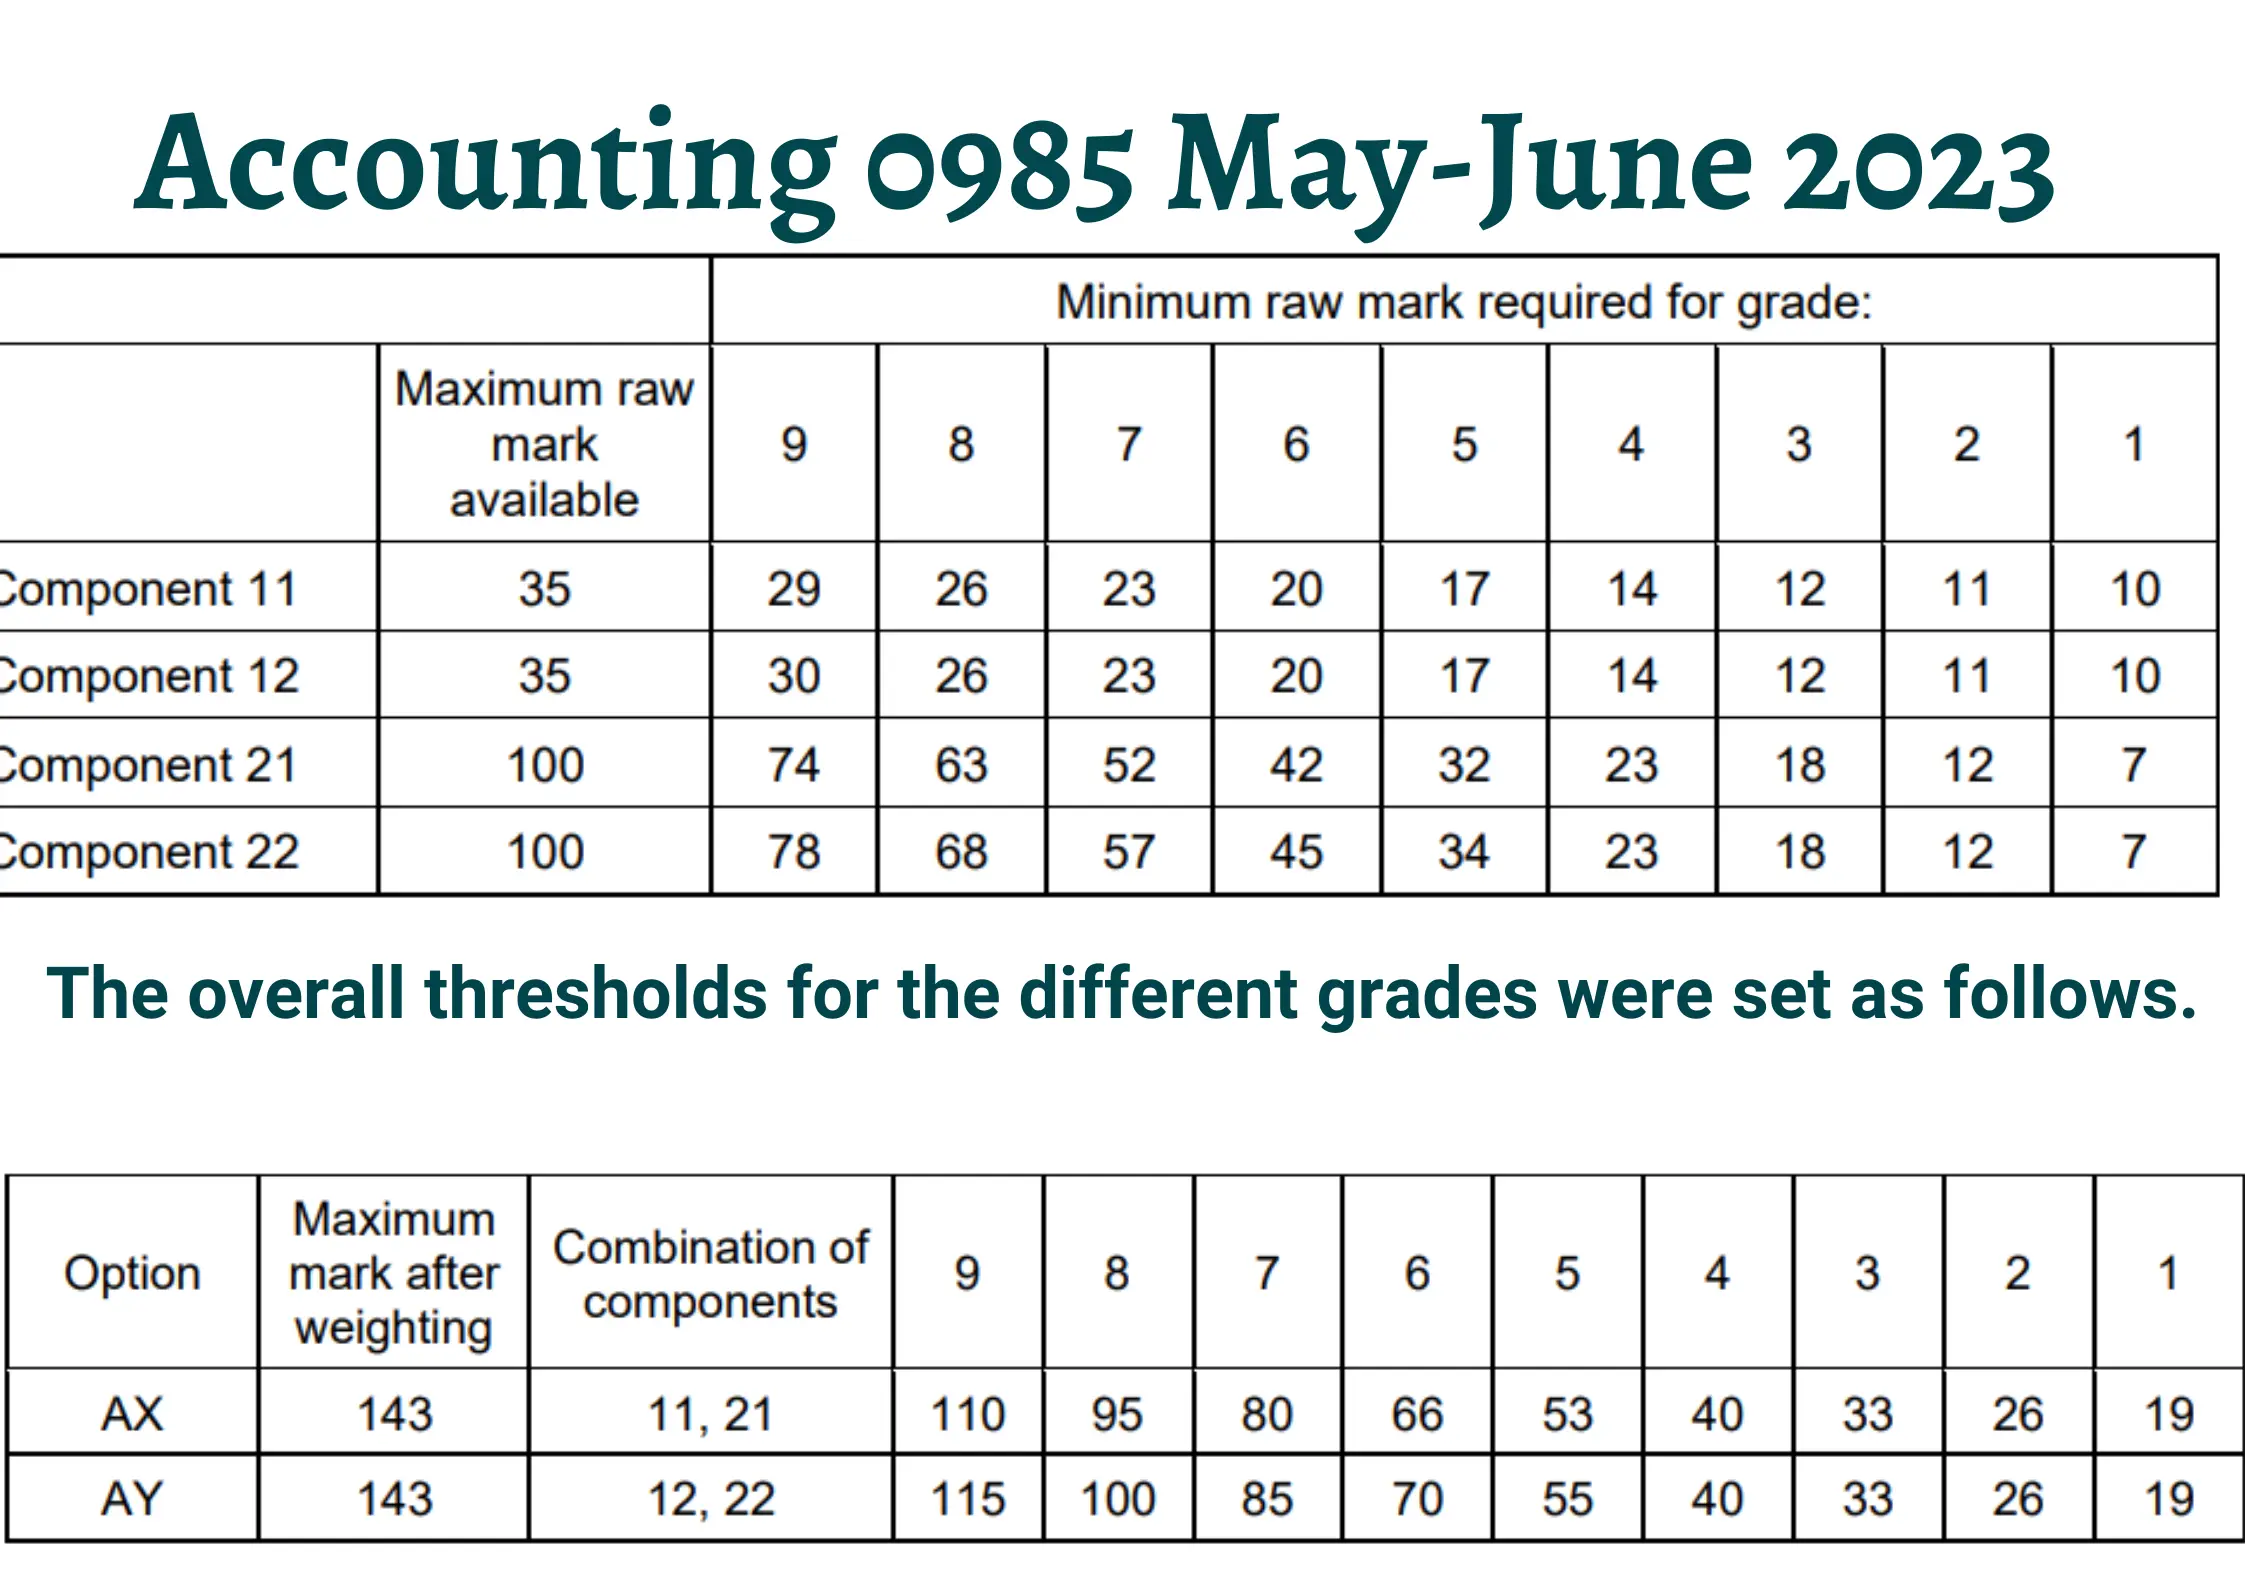 Accounting 0985 May-June 2023 Grading Thredshold